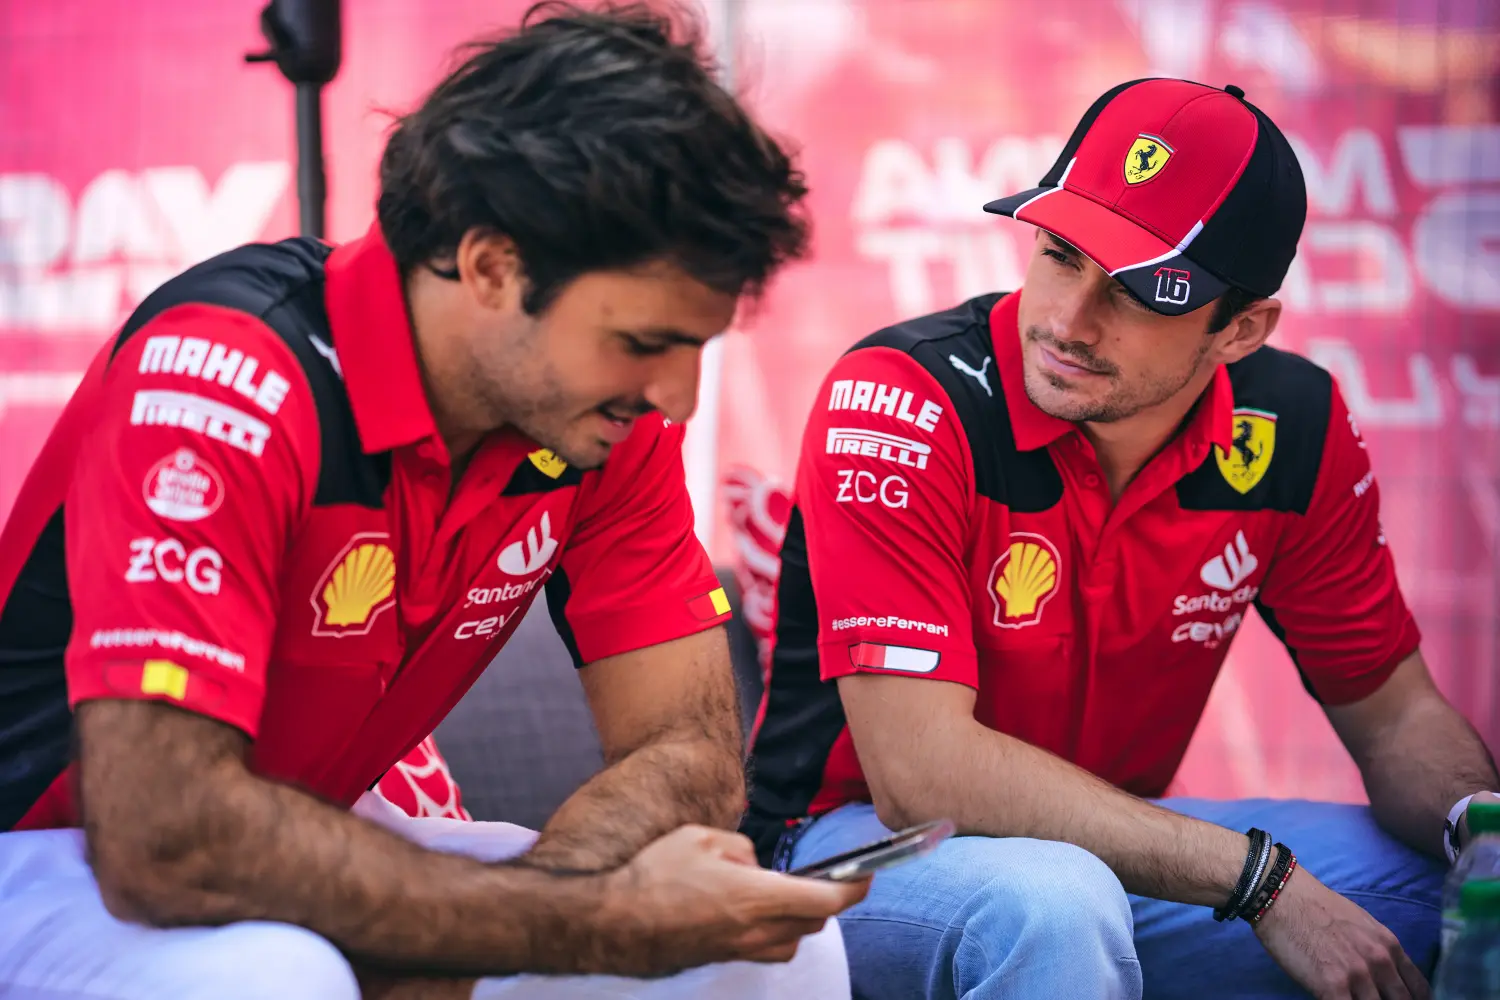 Carlos Sainz i Charles Leclerc - Scuderia Ferrari / © Scuderia Ferrari